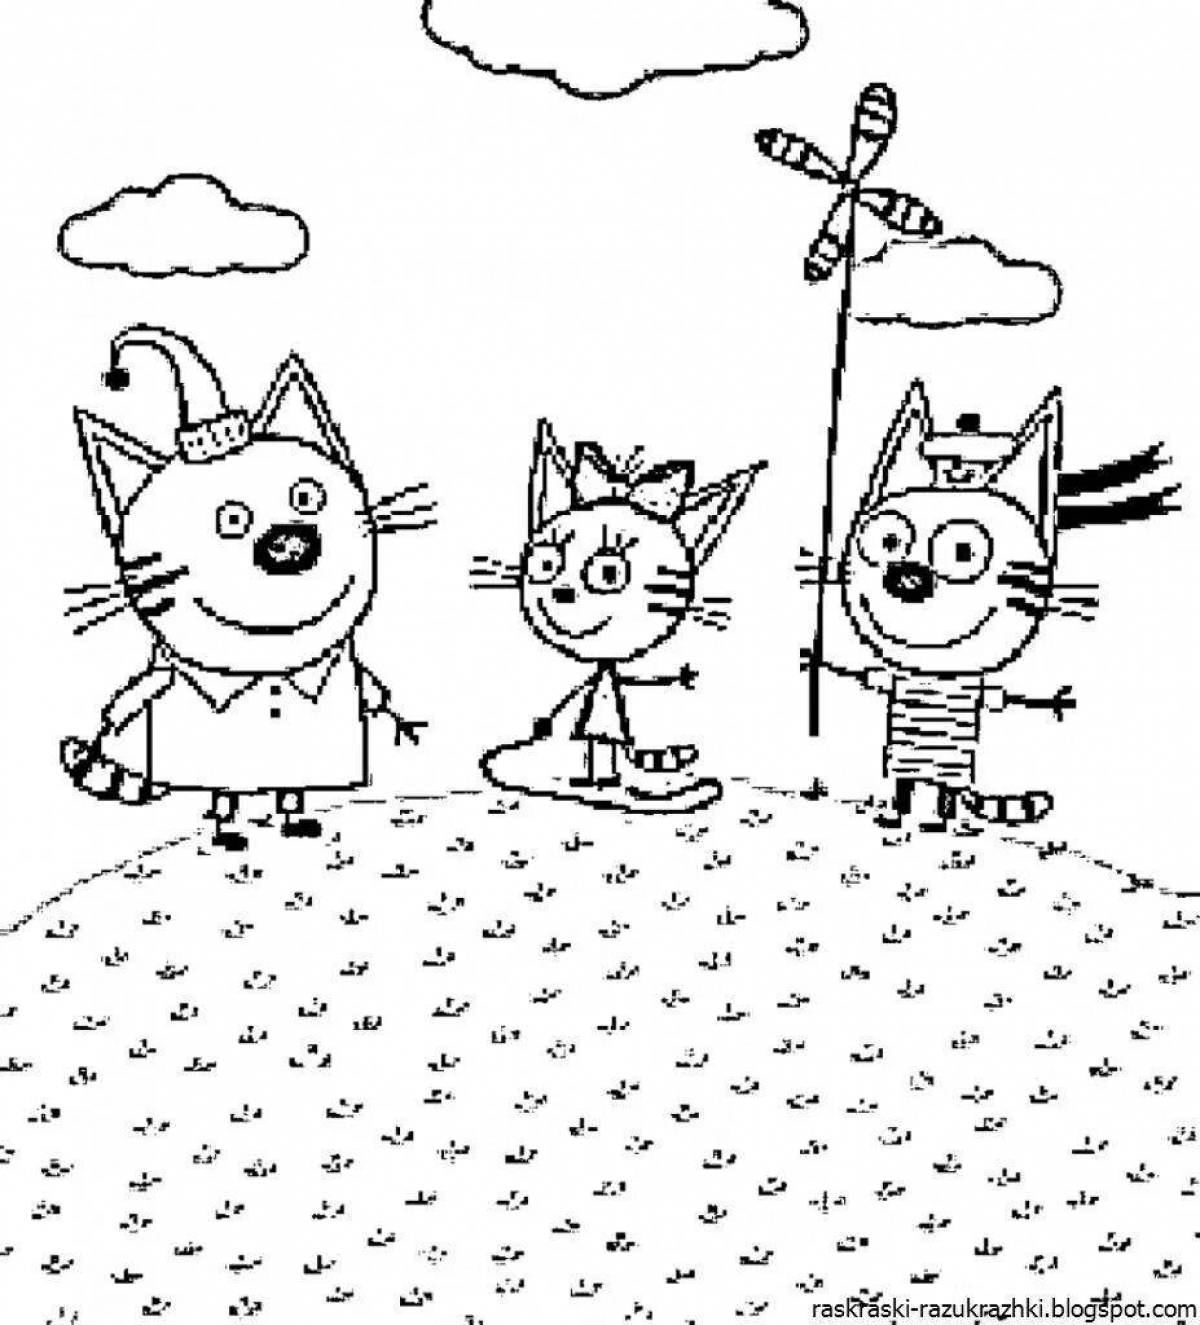 Фото Забавный рисунок трех кошек